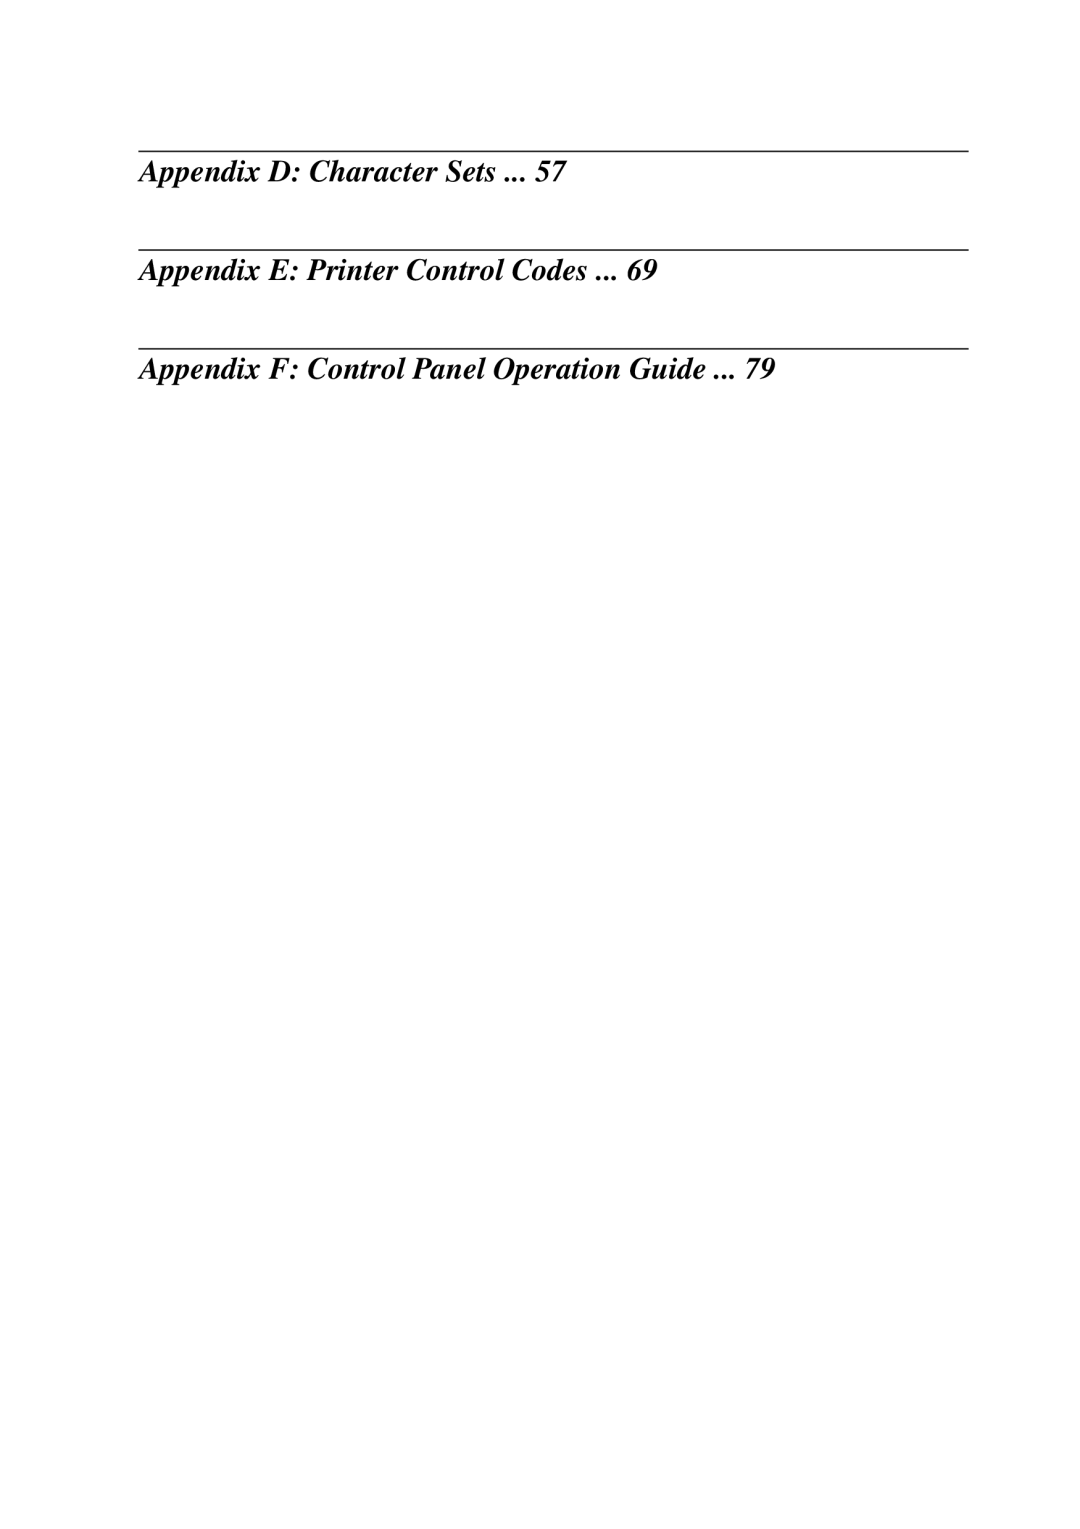 Star Micronics XB24-250 II user manual Appendix D Character Sets Appendix E Printer Control Codes 